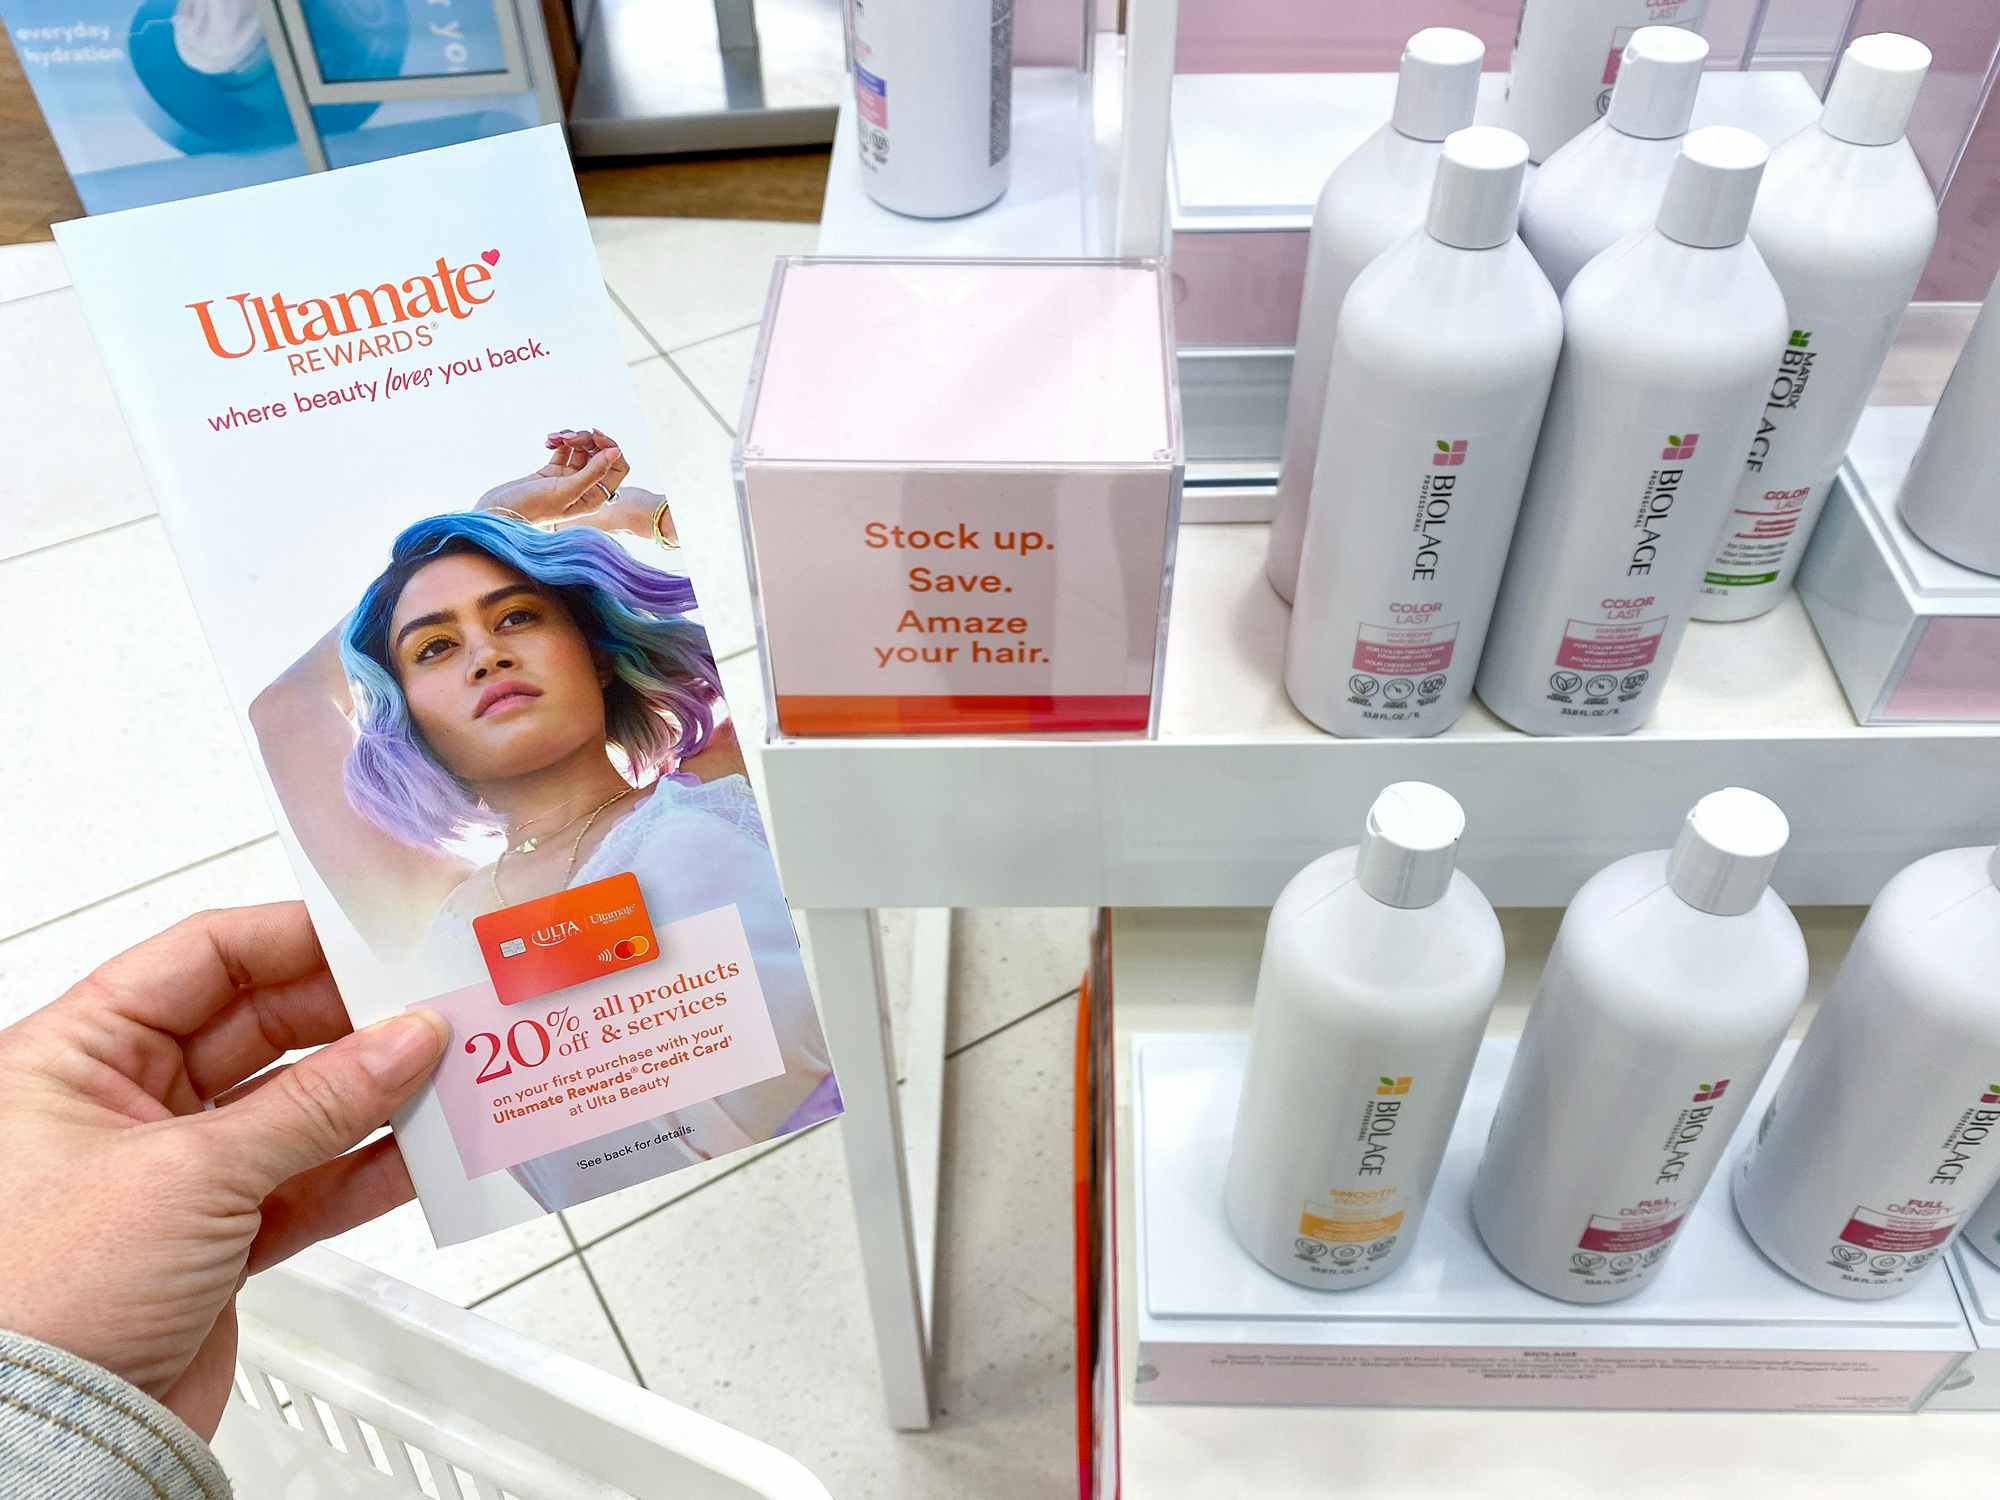 ultamate rewards brochure near jumbo love sale biolage shampoo bottles